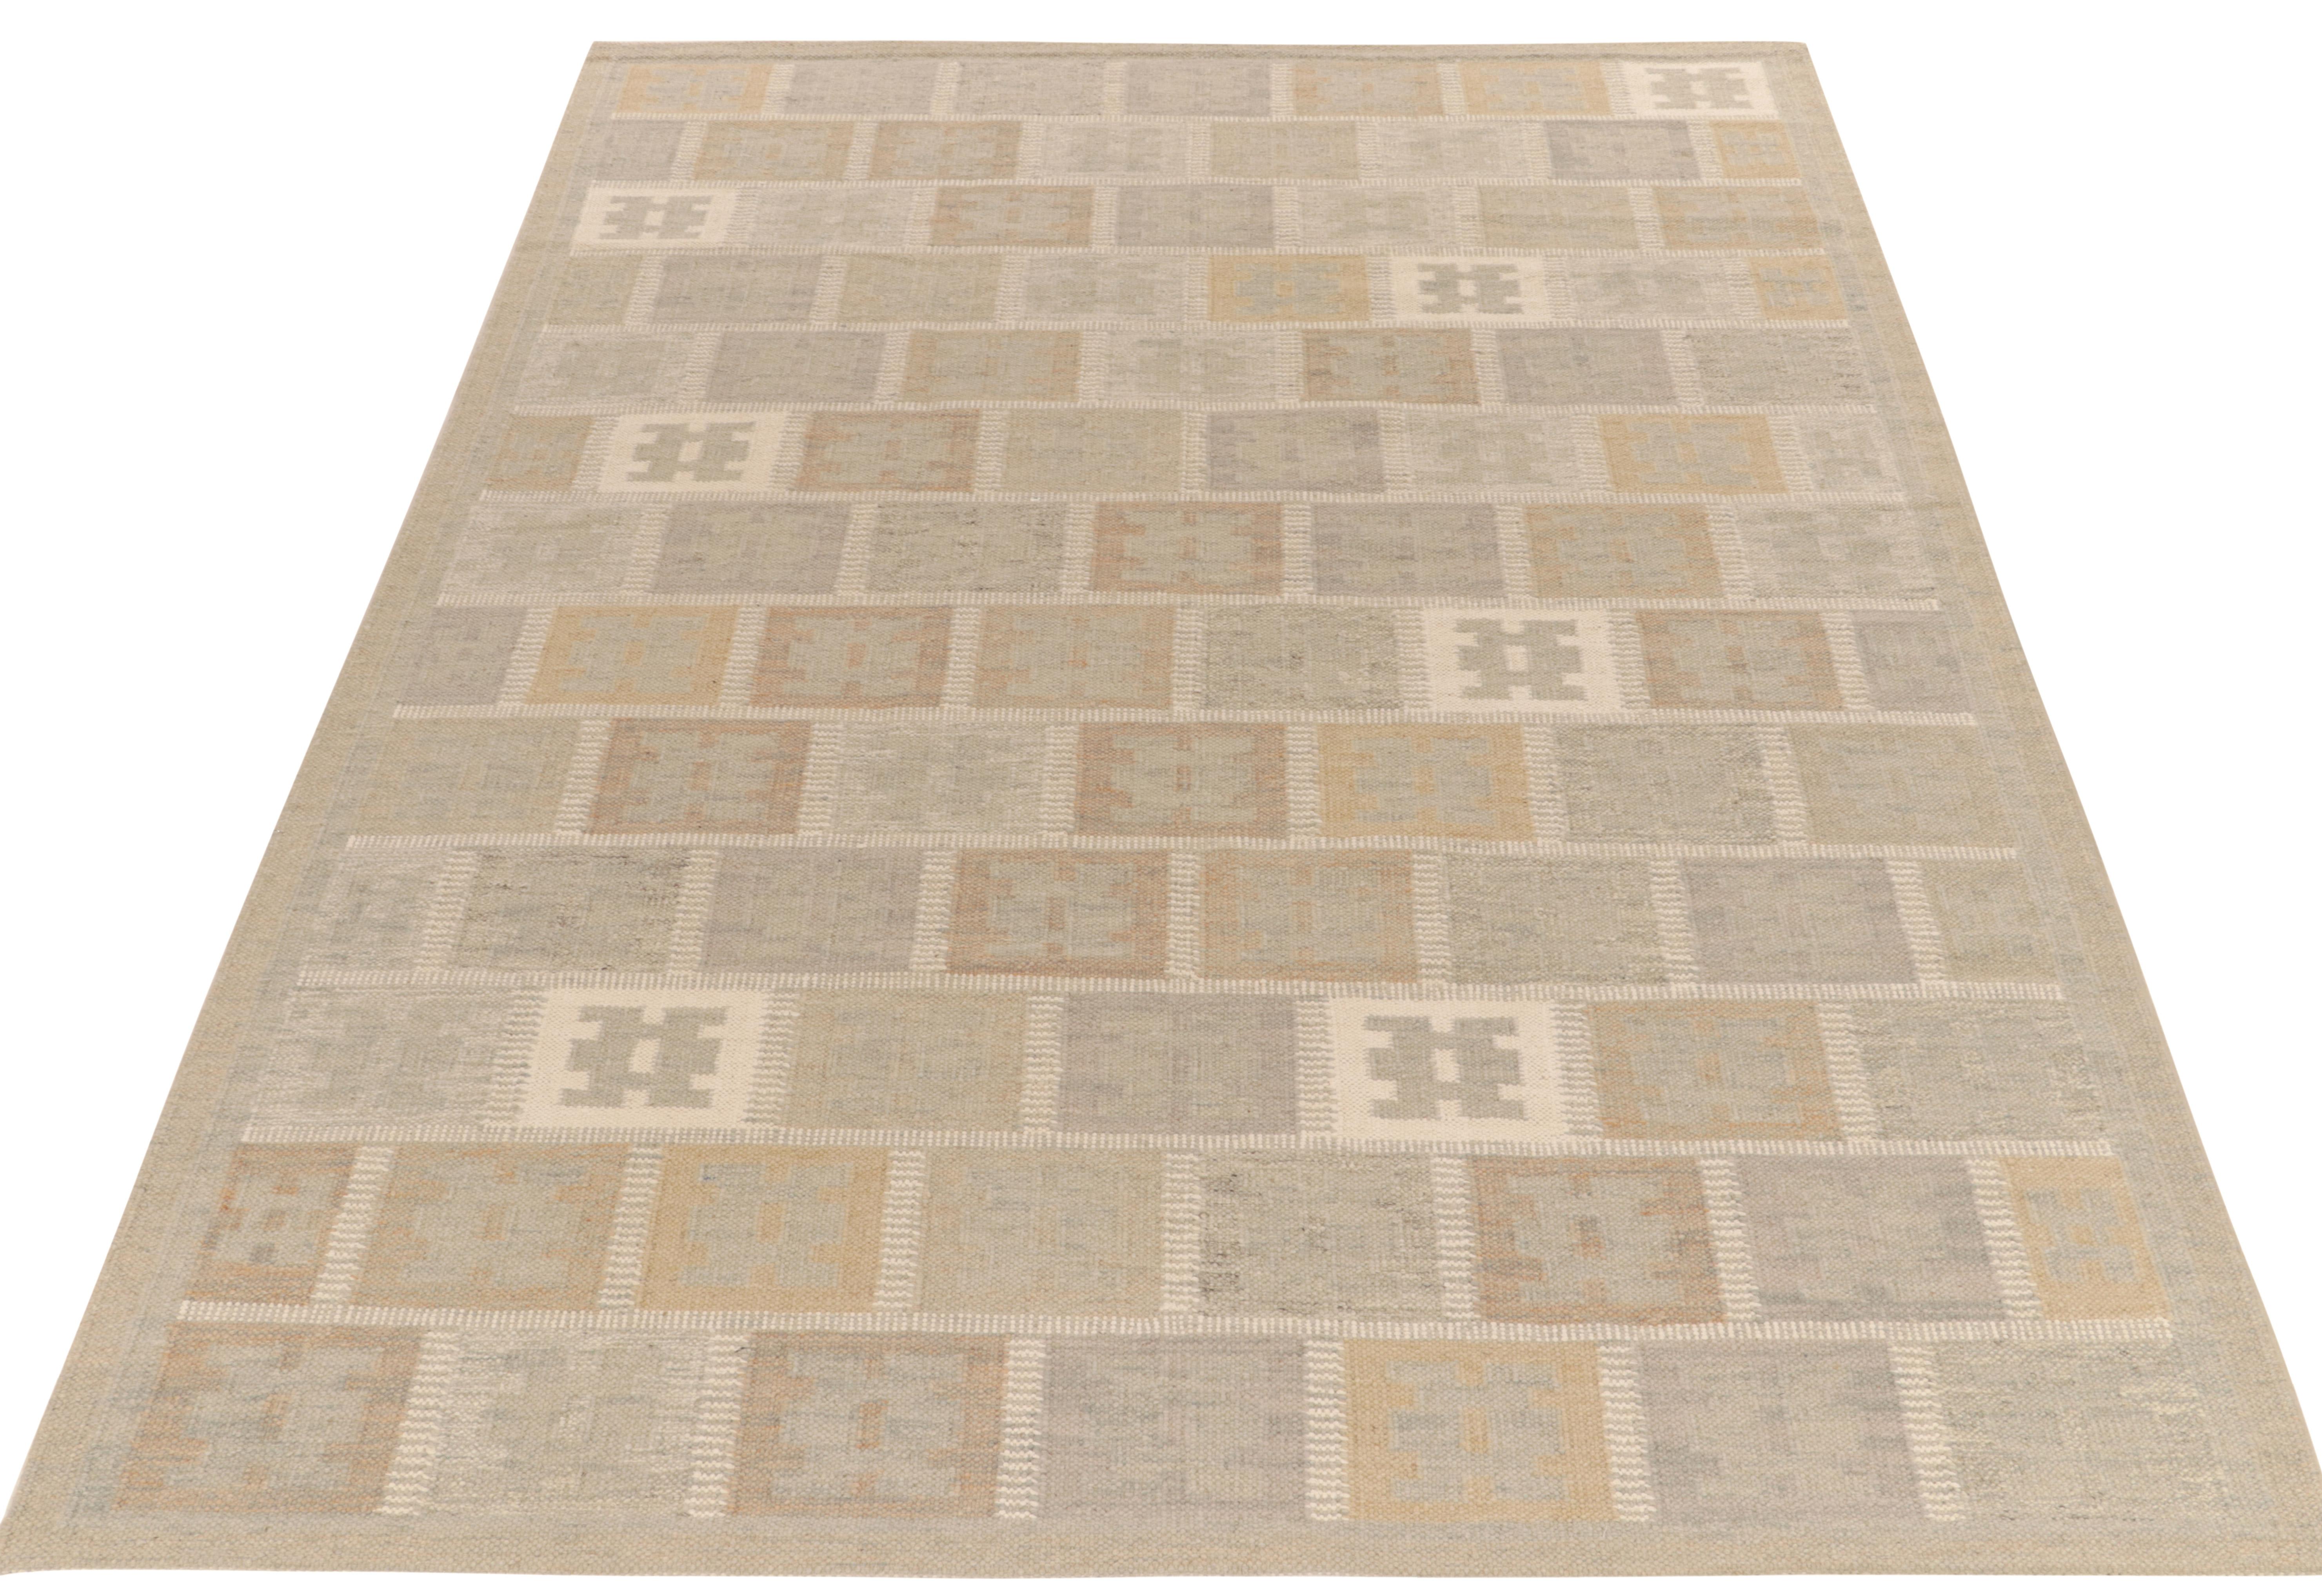 Tissé à la main en laine de qualité, un Kilim 9x12 de notre répertoire primé de tissages plats scandinaves. Le tapis kilim présente un mouvement géométrique profond dans des tons gris et beige/brun atténués, avec un attrait discret pour l'esthétique